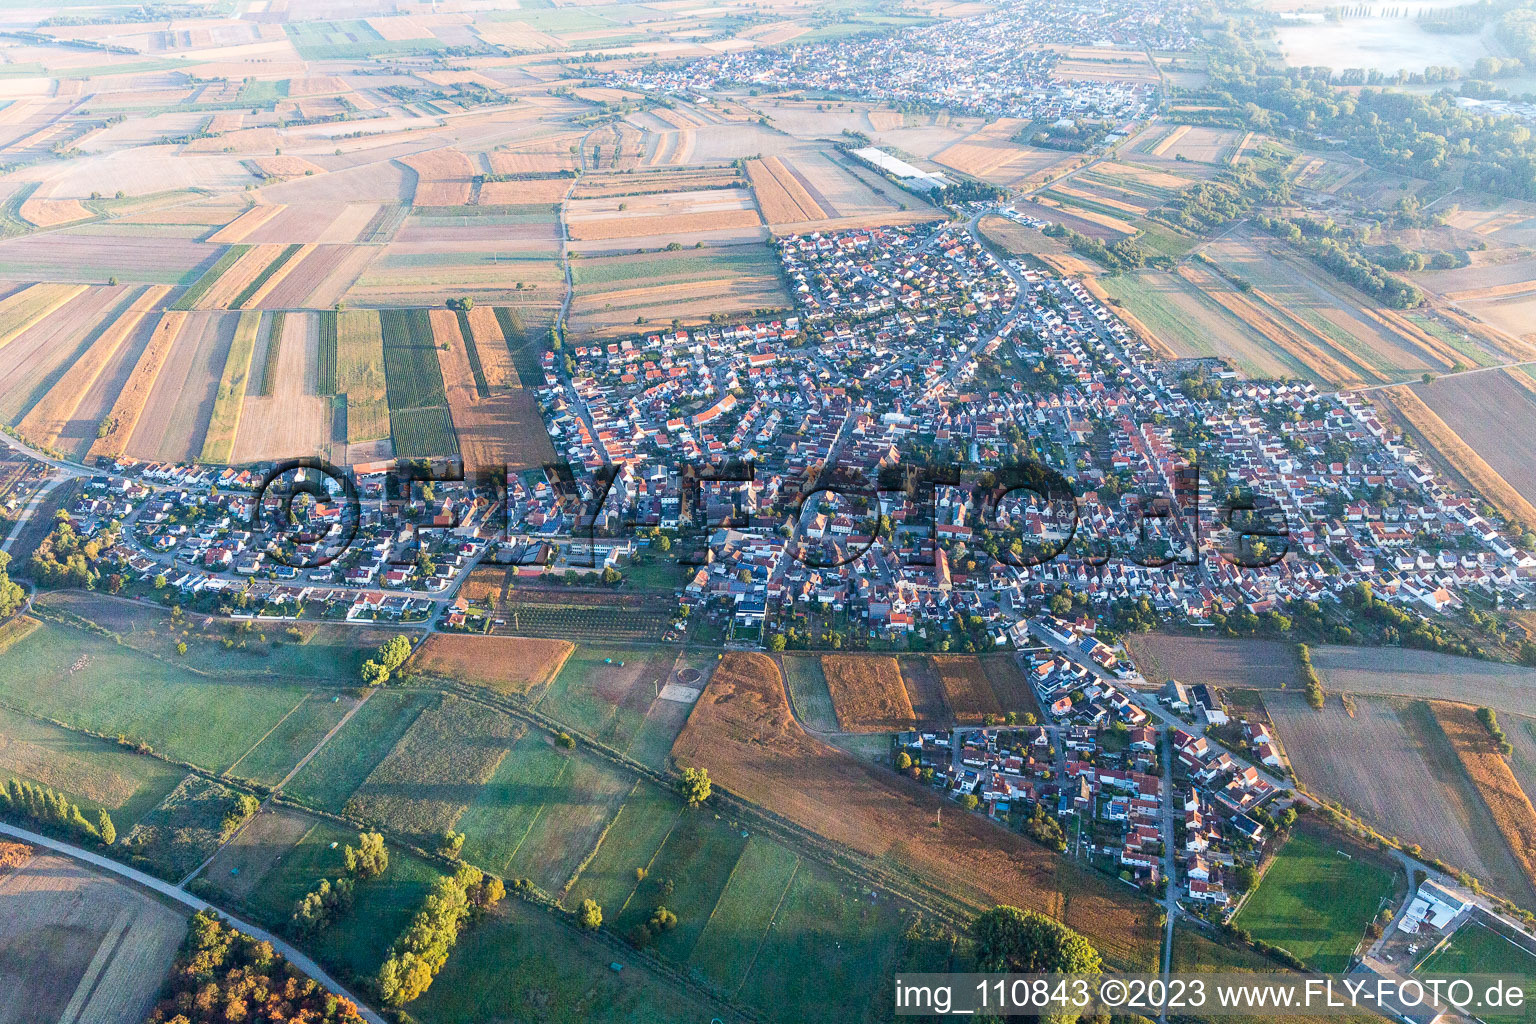 Ortsteil Mechtersheim in Römerberg im Bundesland Rheinland-Pfalz, Deutschland aus der Luft betrachtet